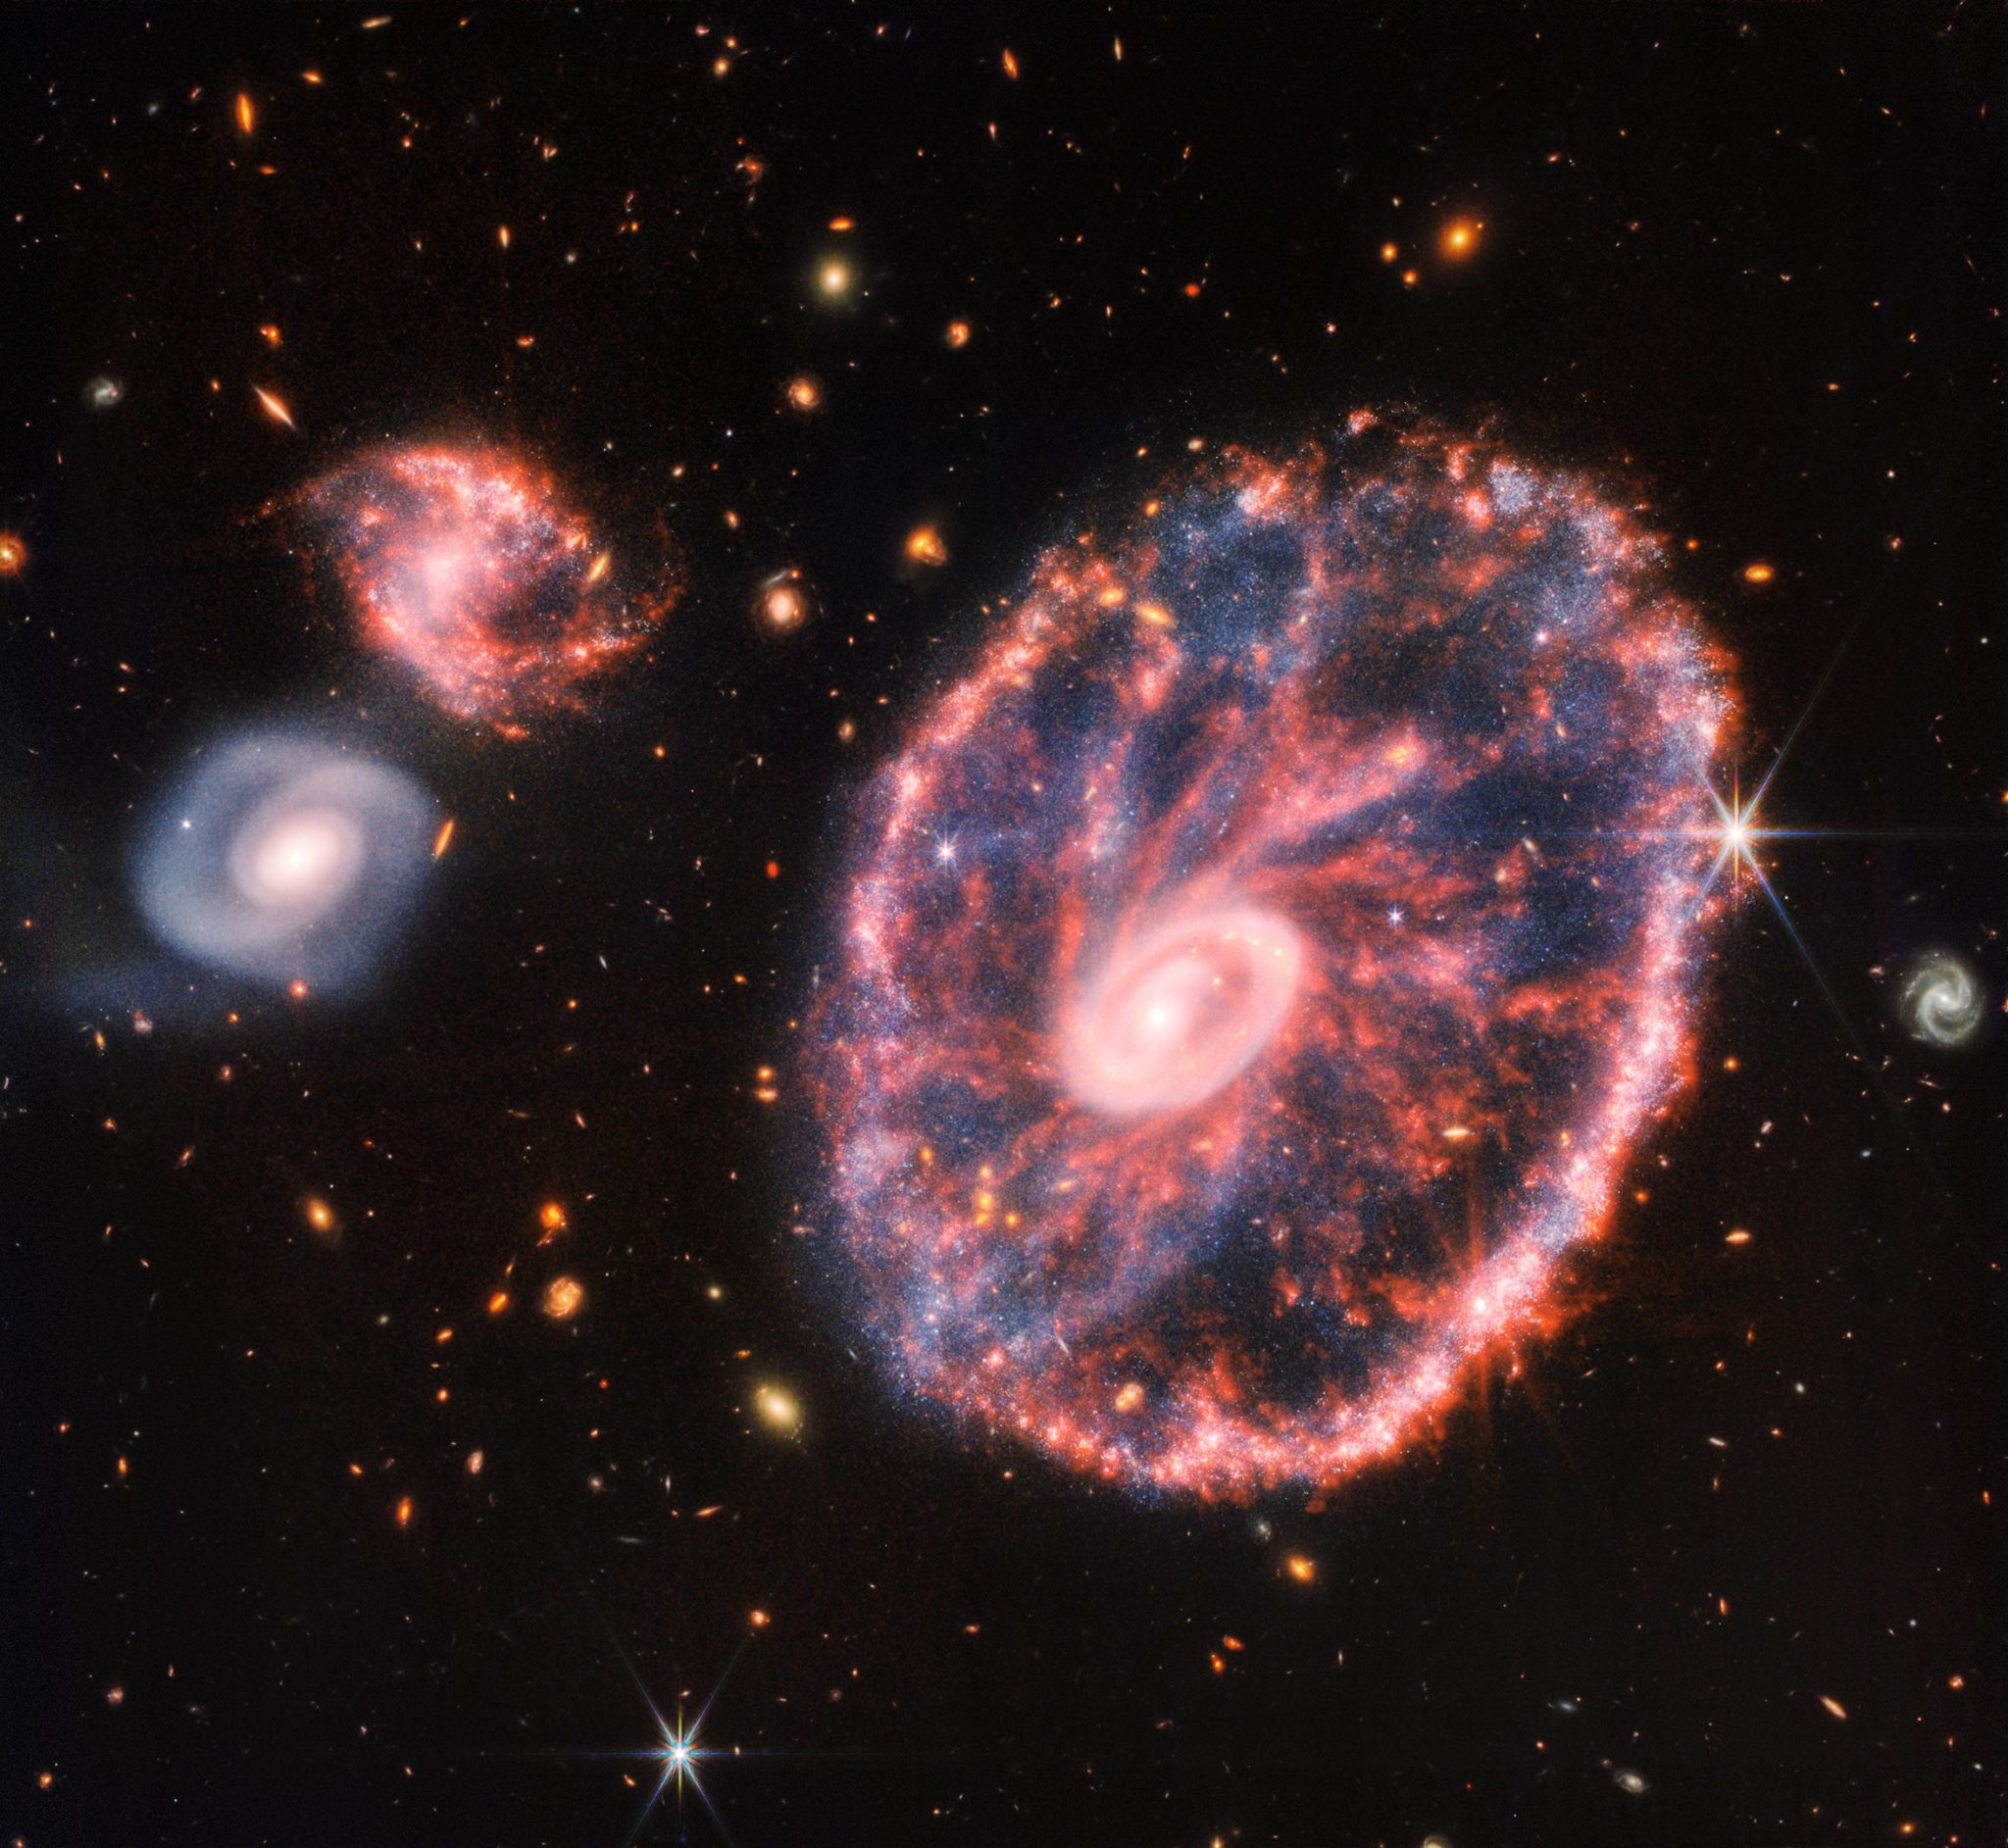 Telescopio espacial Webb mirando hacia el caos: captura la gimnasia estelar en la galaxia Wagon Wheel